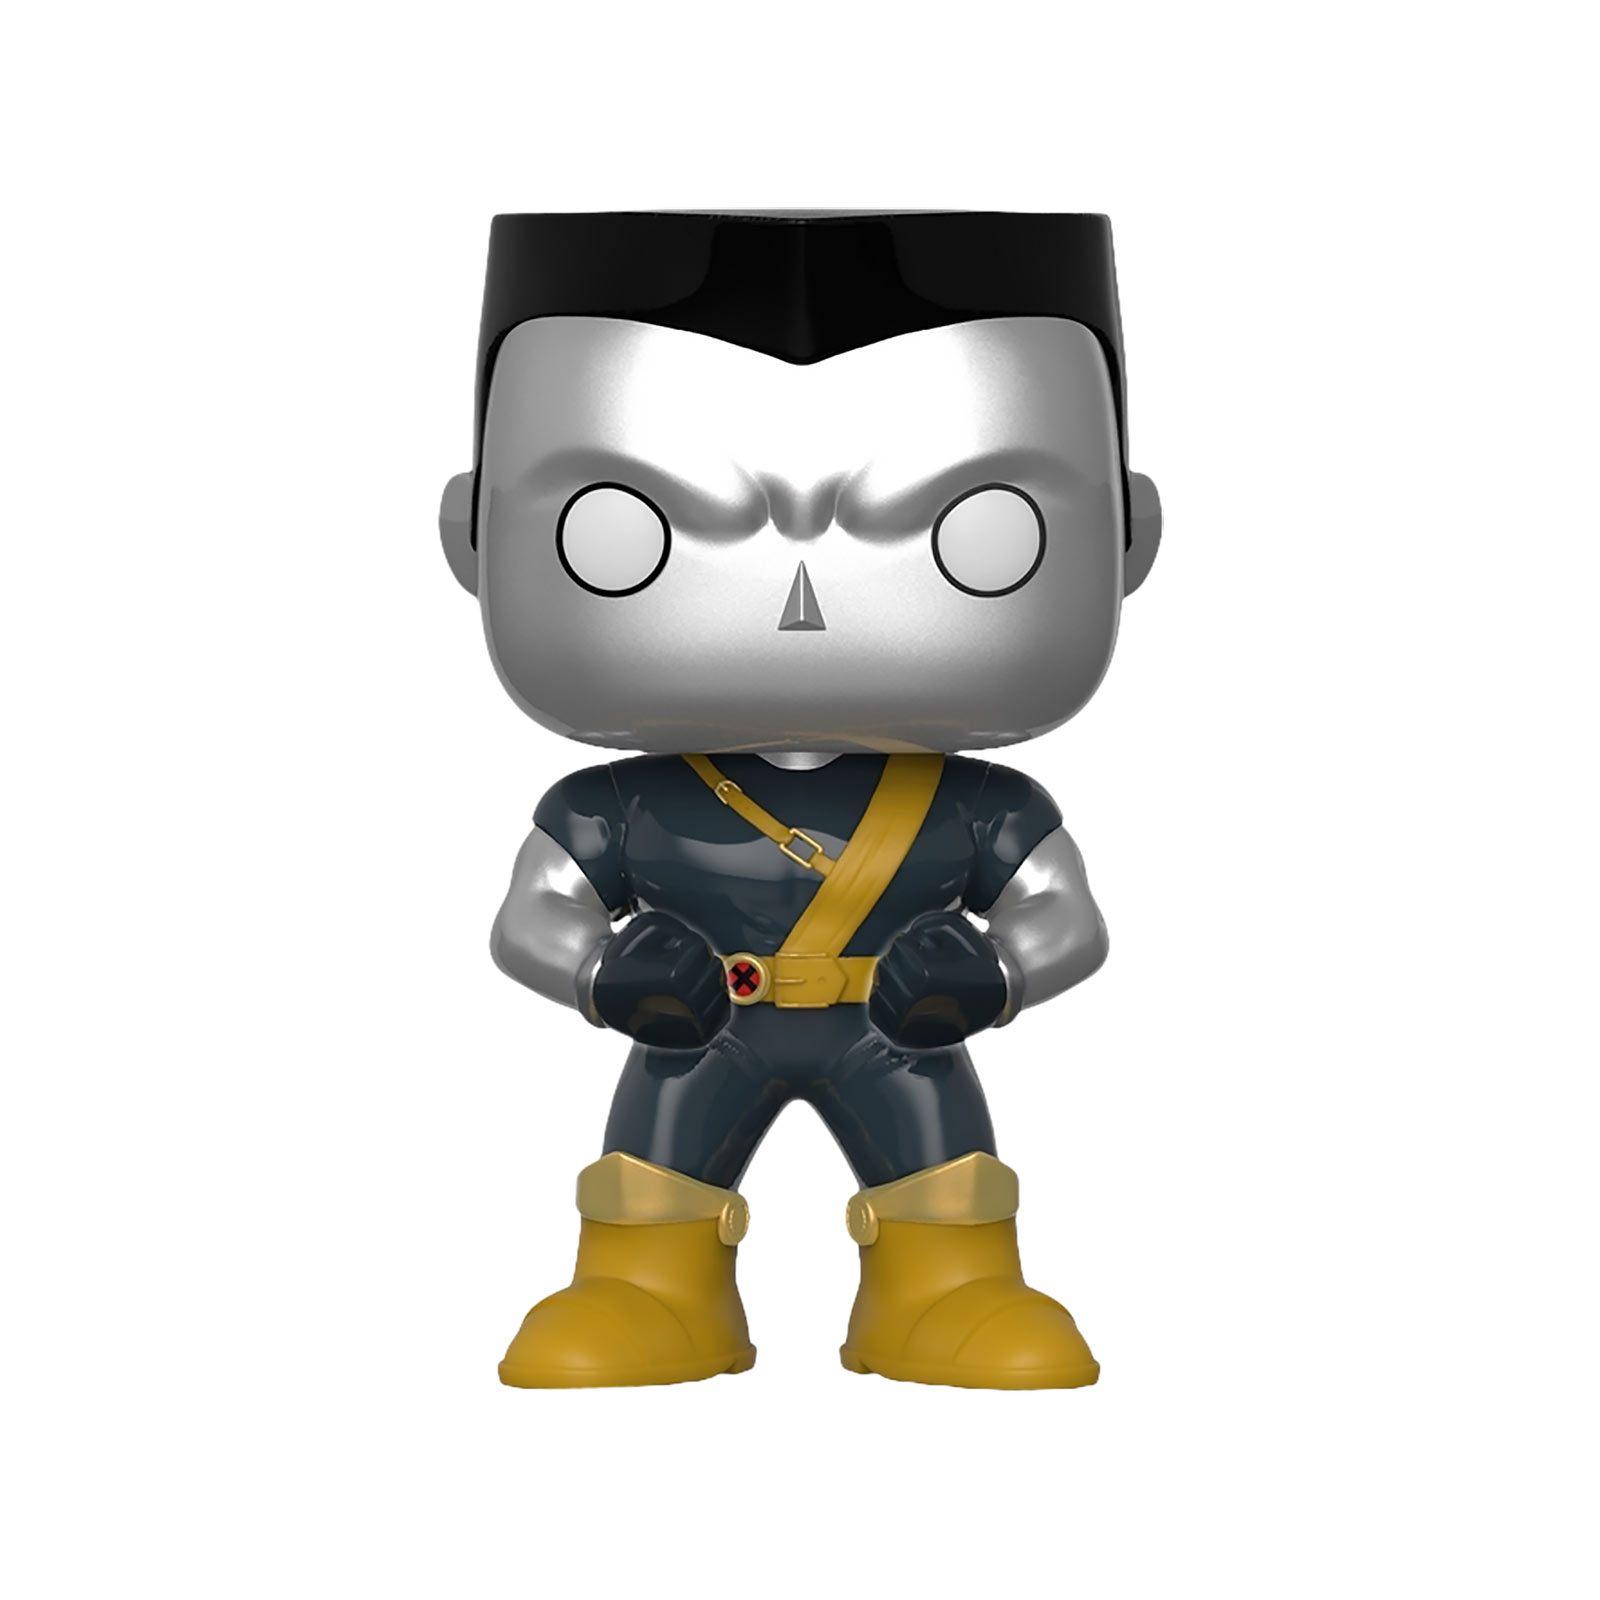 X-Men - Colossus Funko Pop bobblehead figure